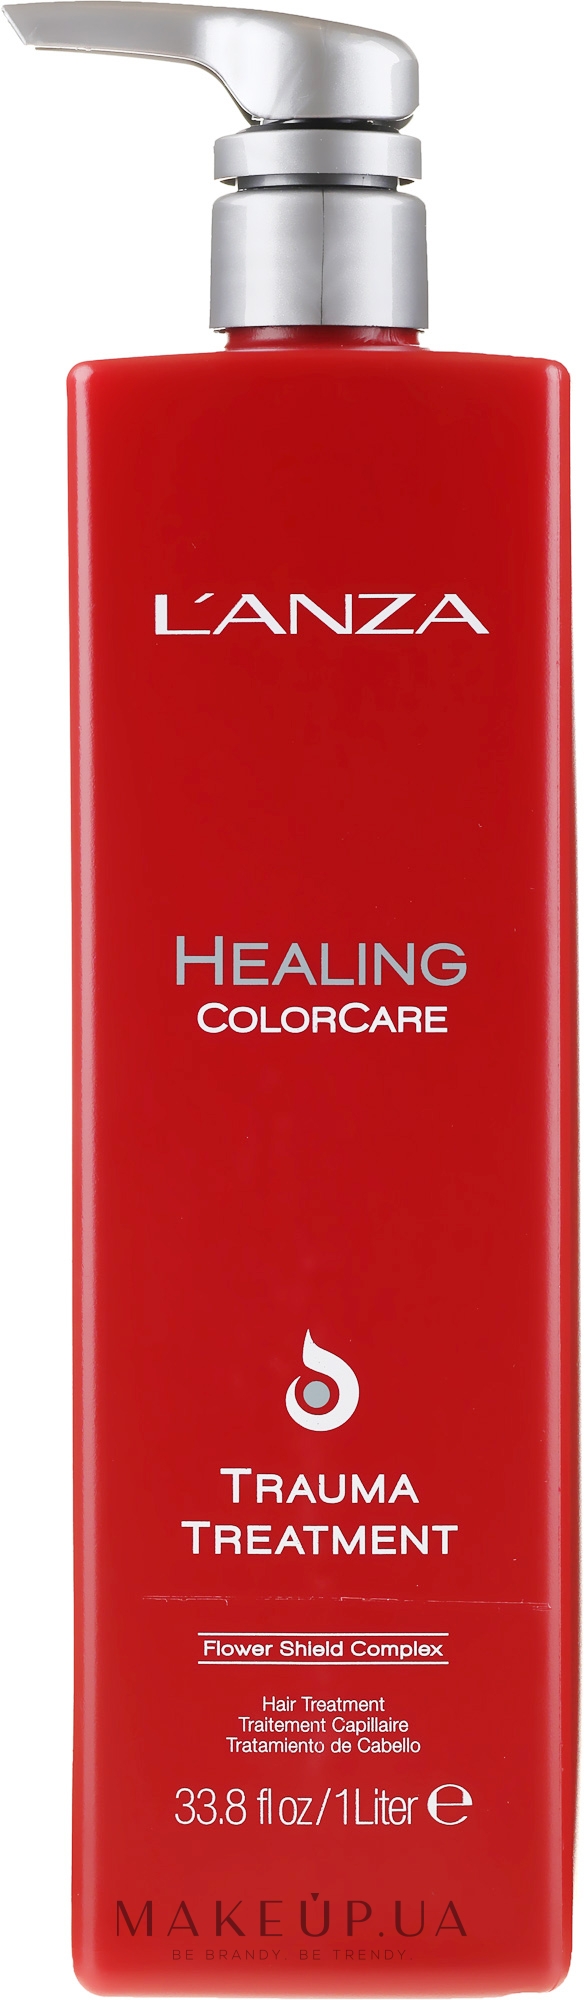 Маска для поврежденных и окрашенных волос - L'Anza Healing ColorCare Trauma Treatment — фото 1000ml